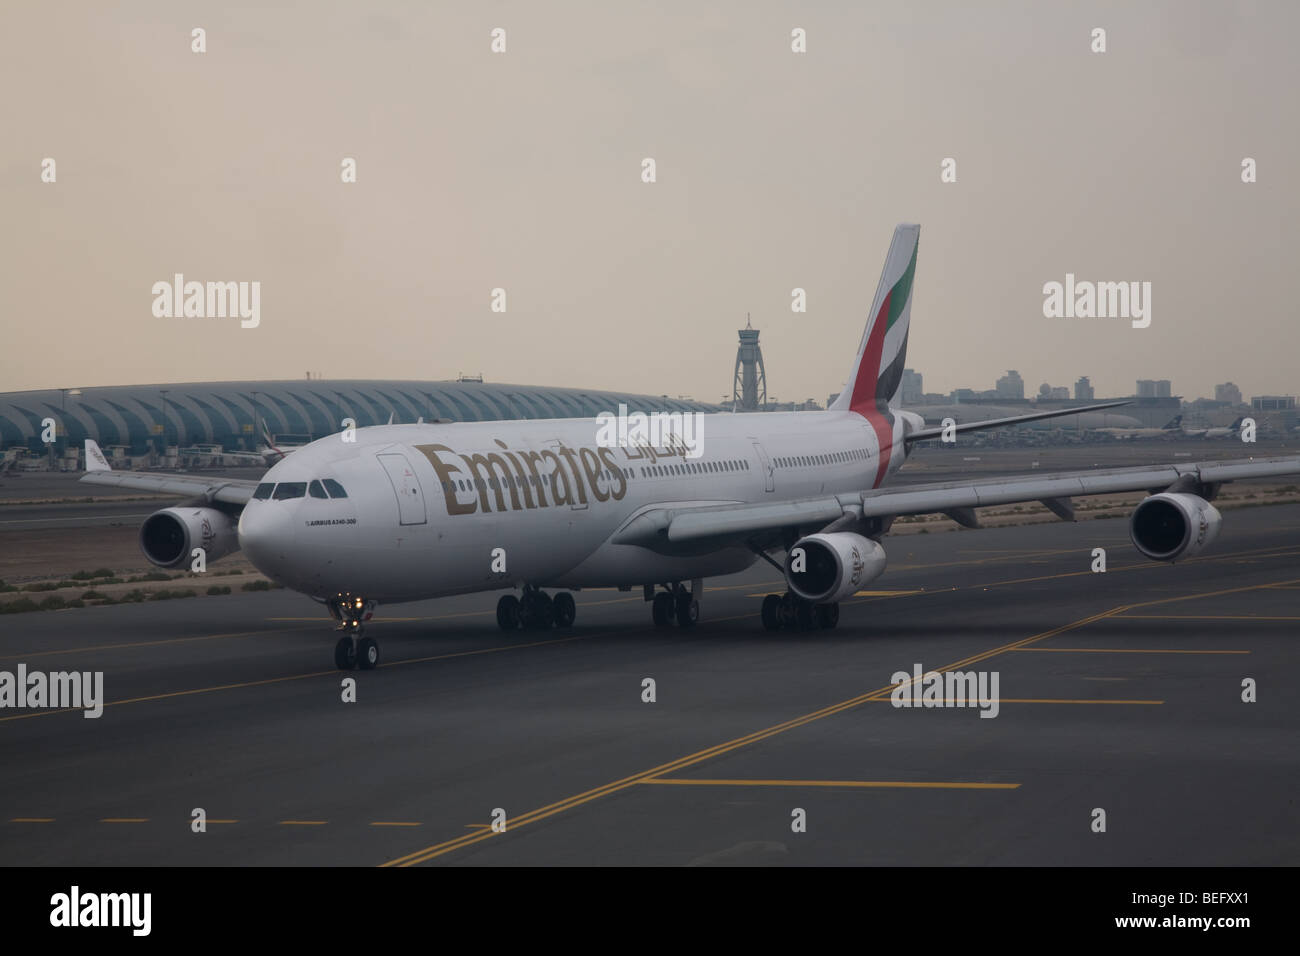 Emirates Airline Plane at Dubai Airport Uae Stock Photo